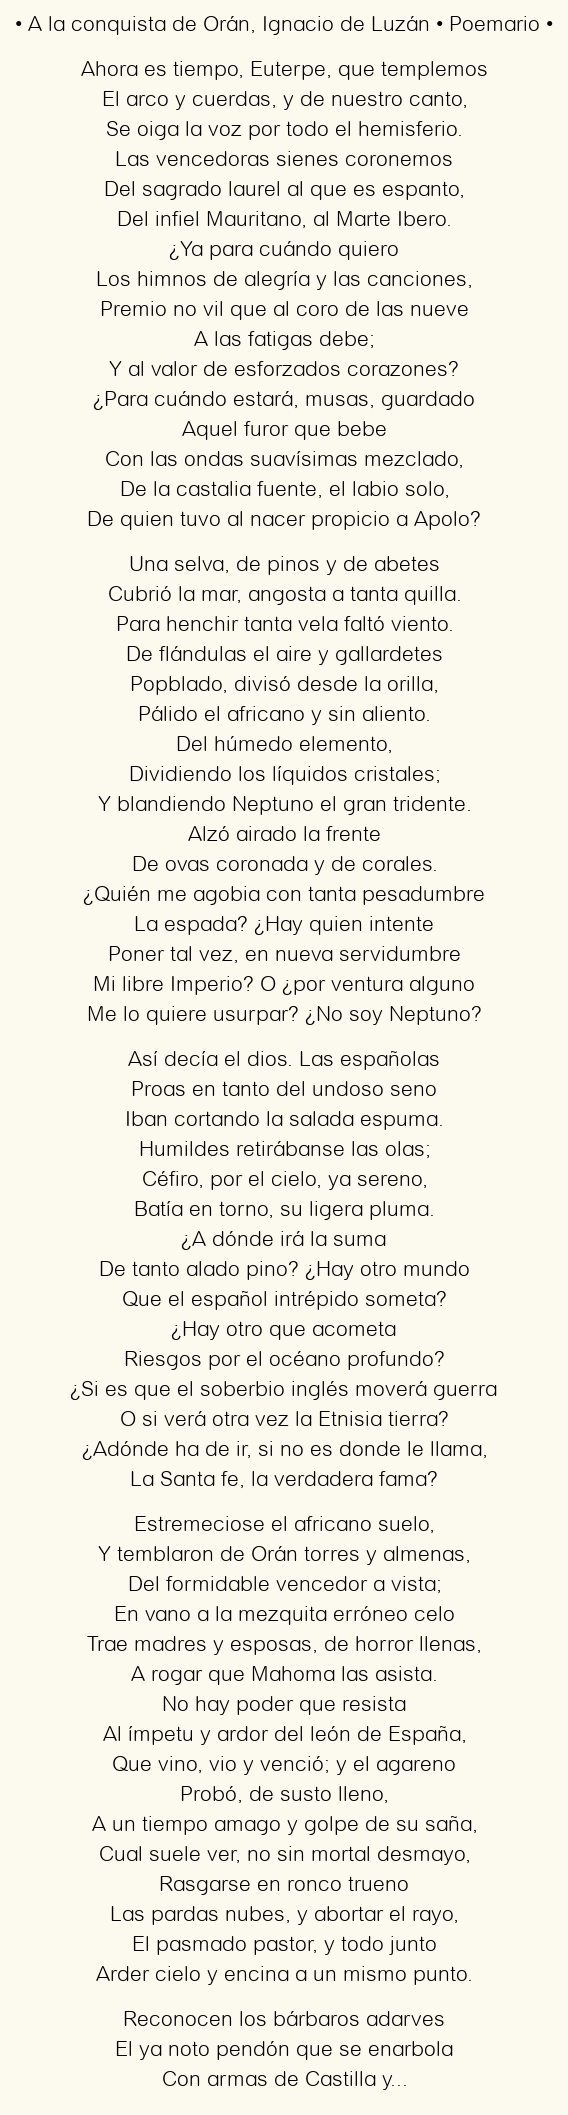 Imagen con el poema A la conquista de Orán, por Ignacio de Luzán